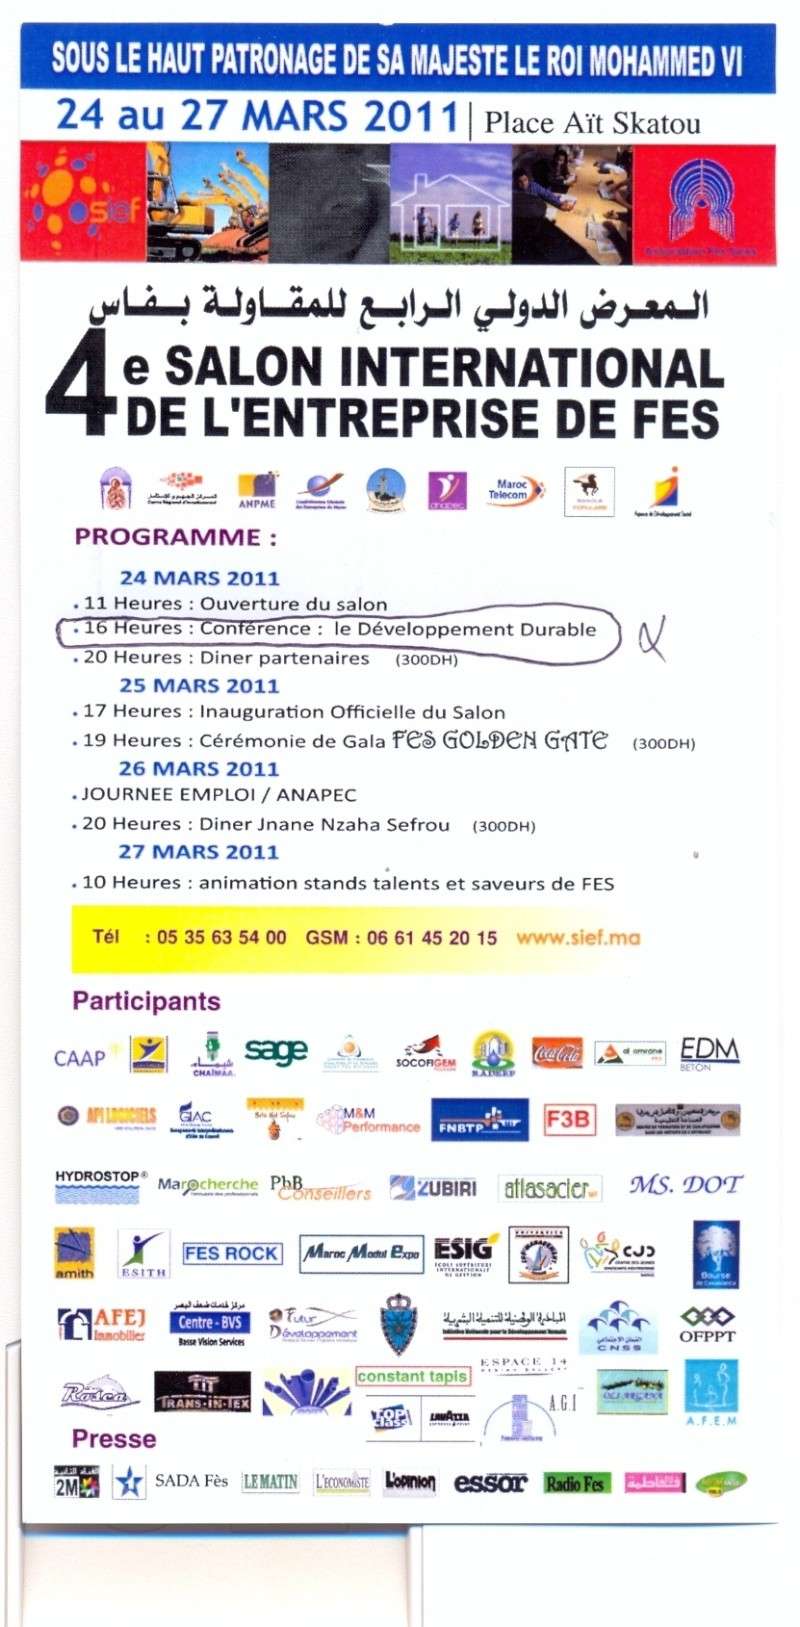 المعرض الدولي الرابع للمقاولة بفاس من 24 إلى 27 مارس 2011 Ouuooo10